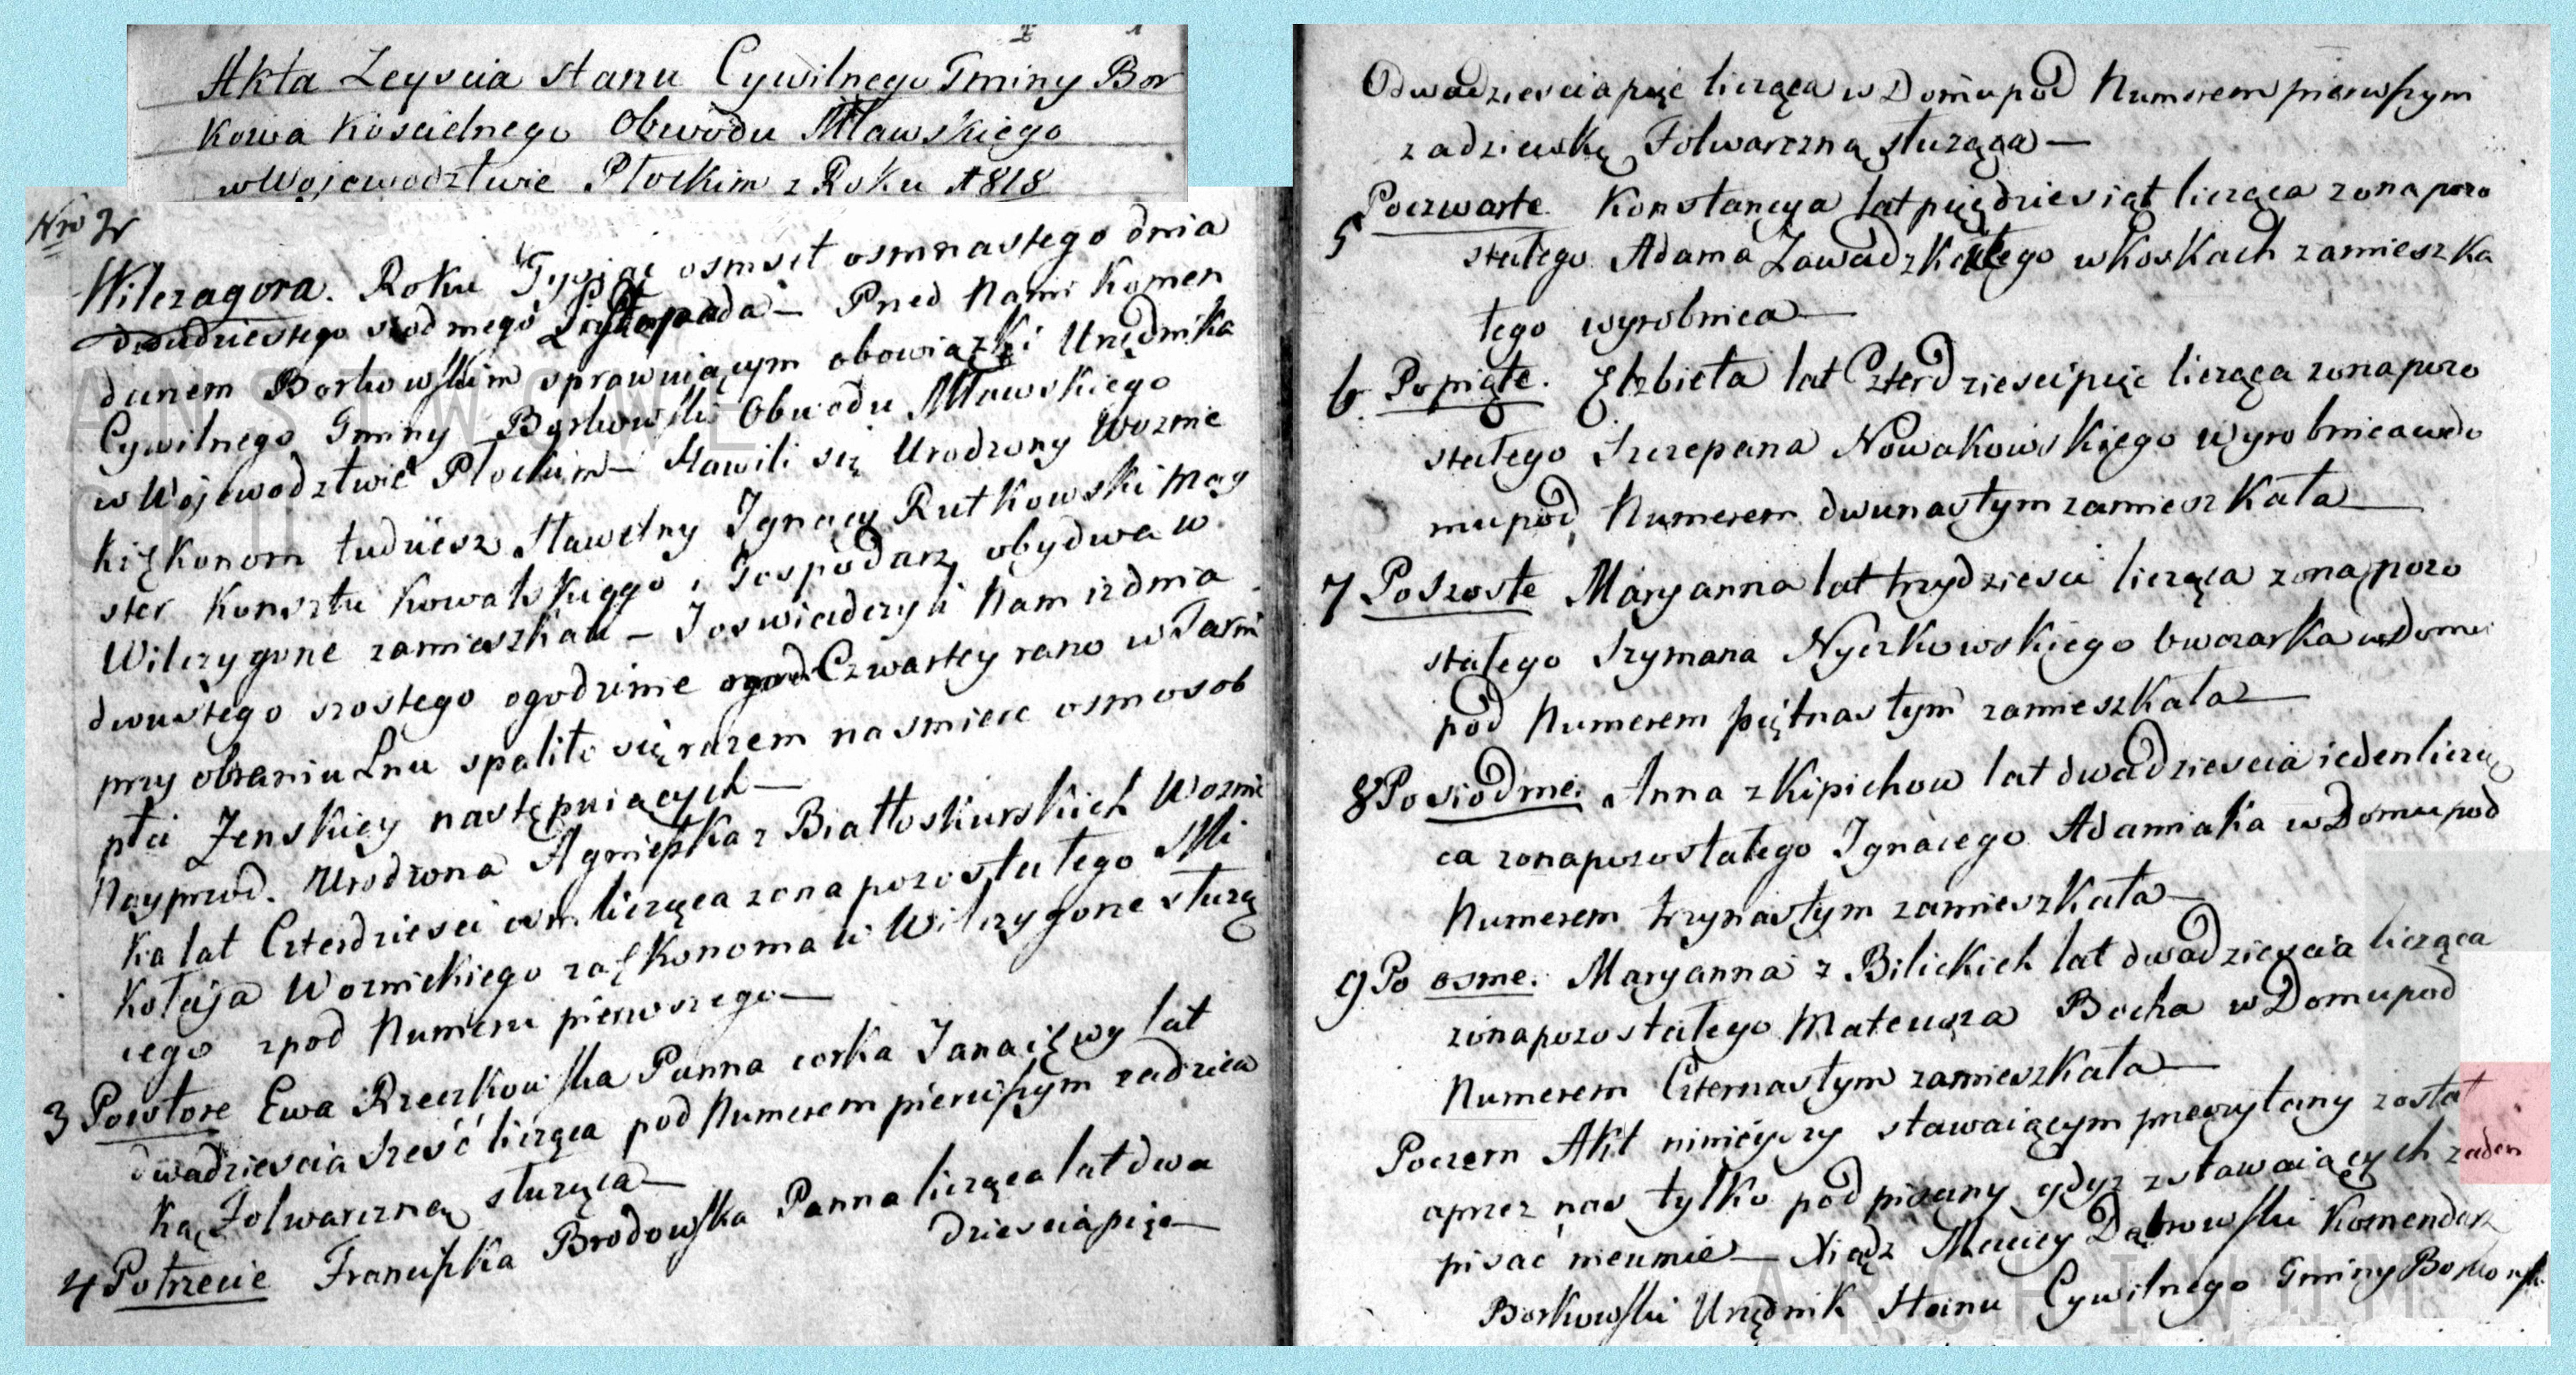 Akta z ksigi zgonw parafii Borkowo Kocielne powicone tragicznie zmarym paniom pracujcym przy lnie w 1818 roku w Wilczogrze.